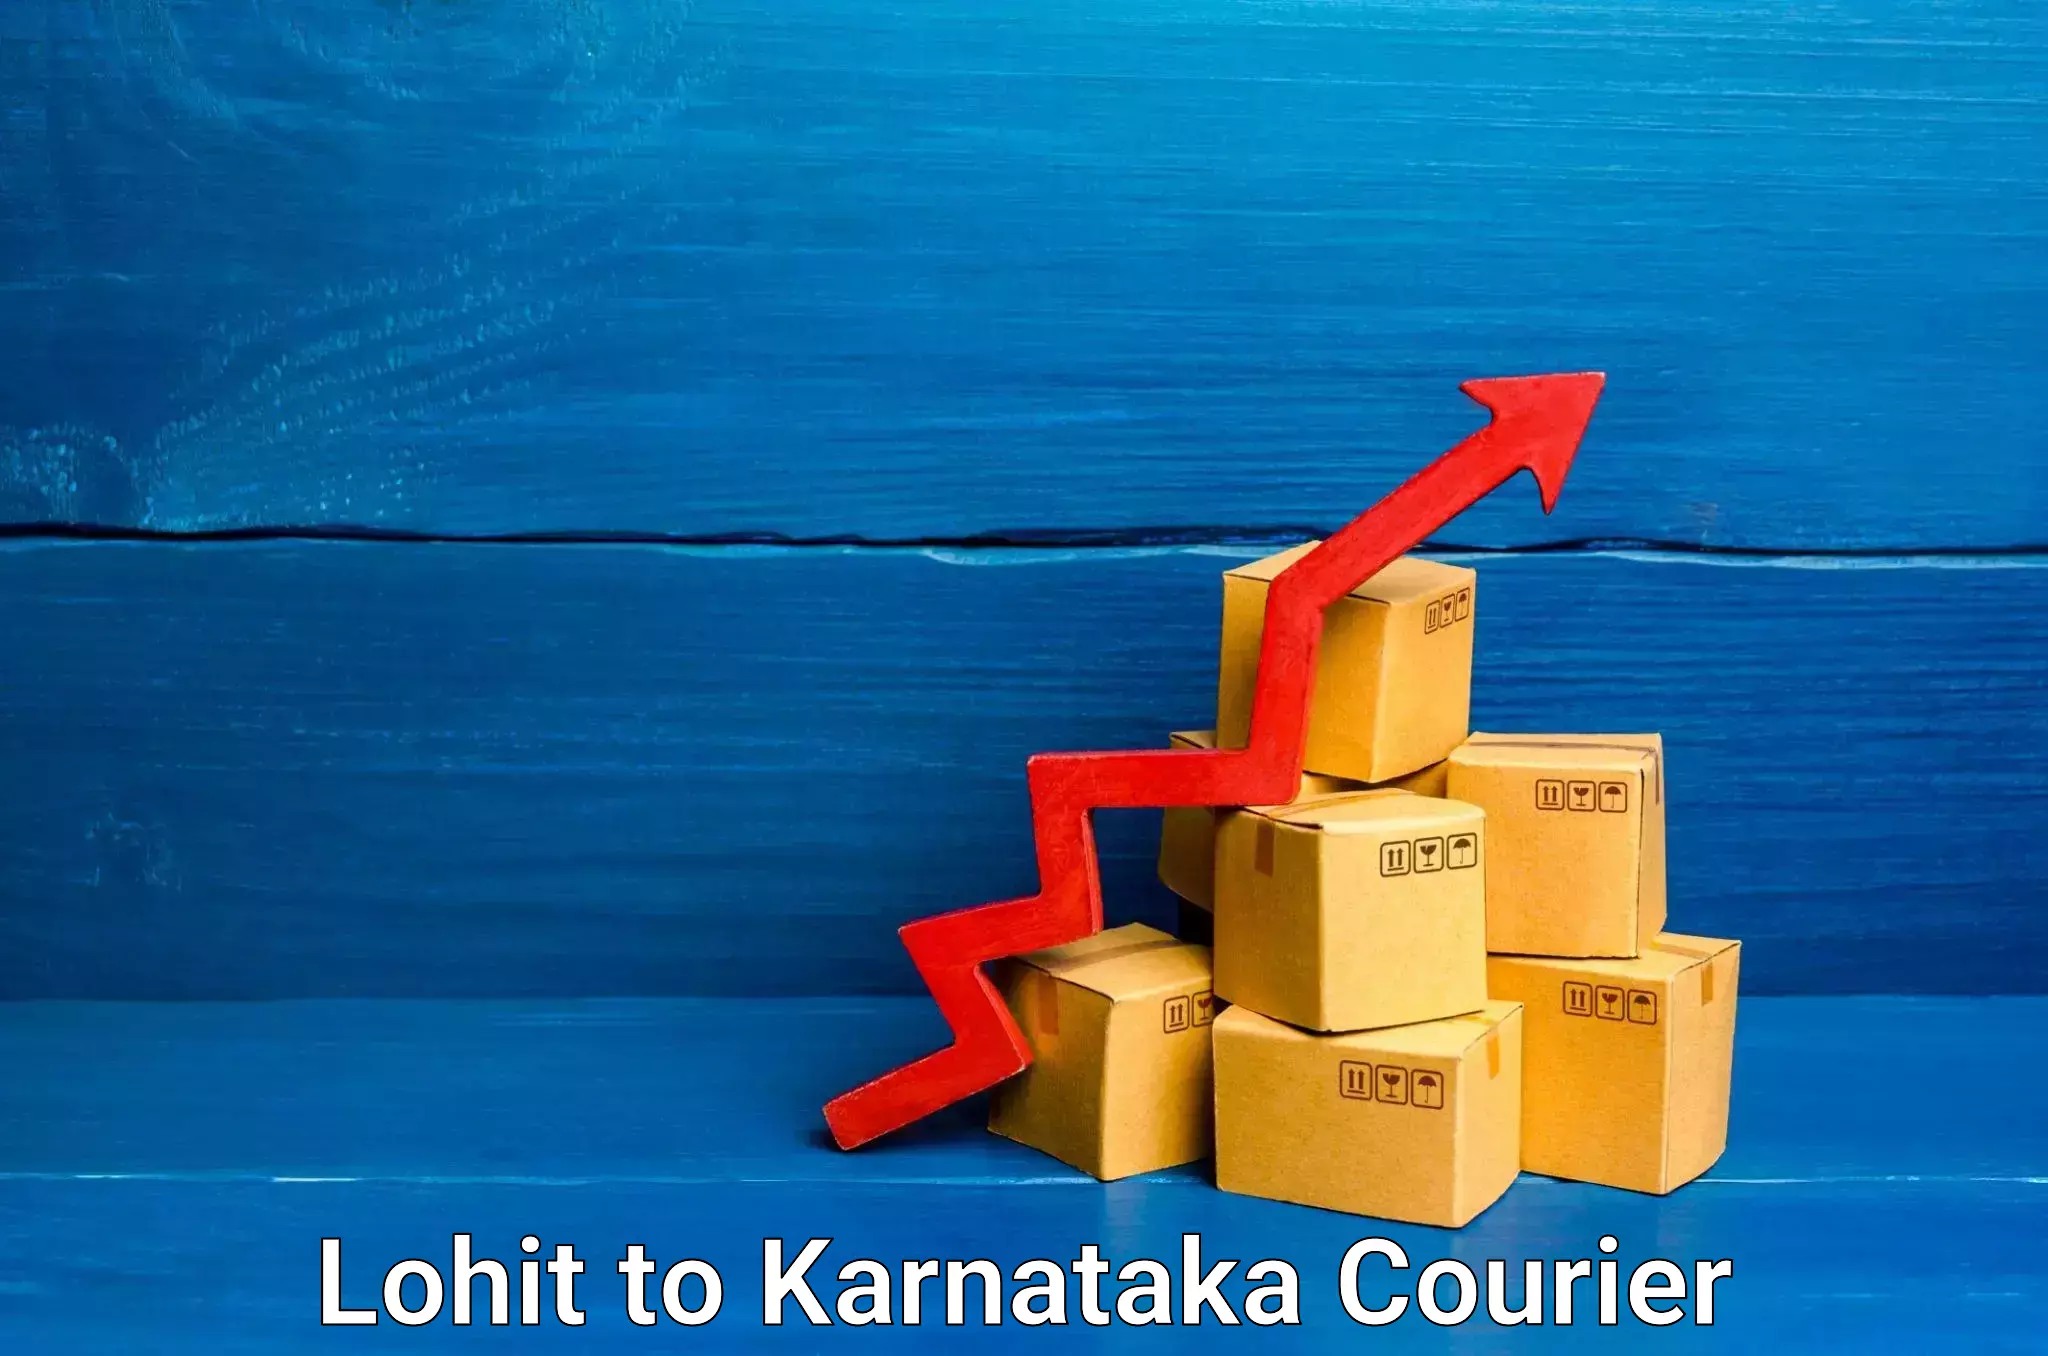 Premium delivery services Lohit to Kundapura